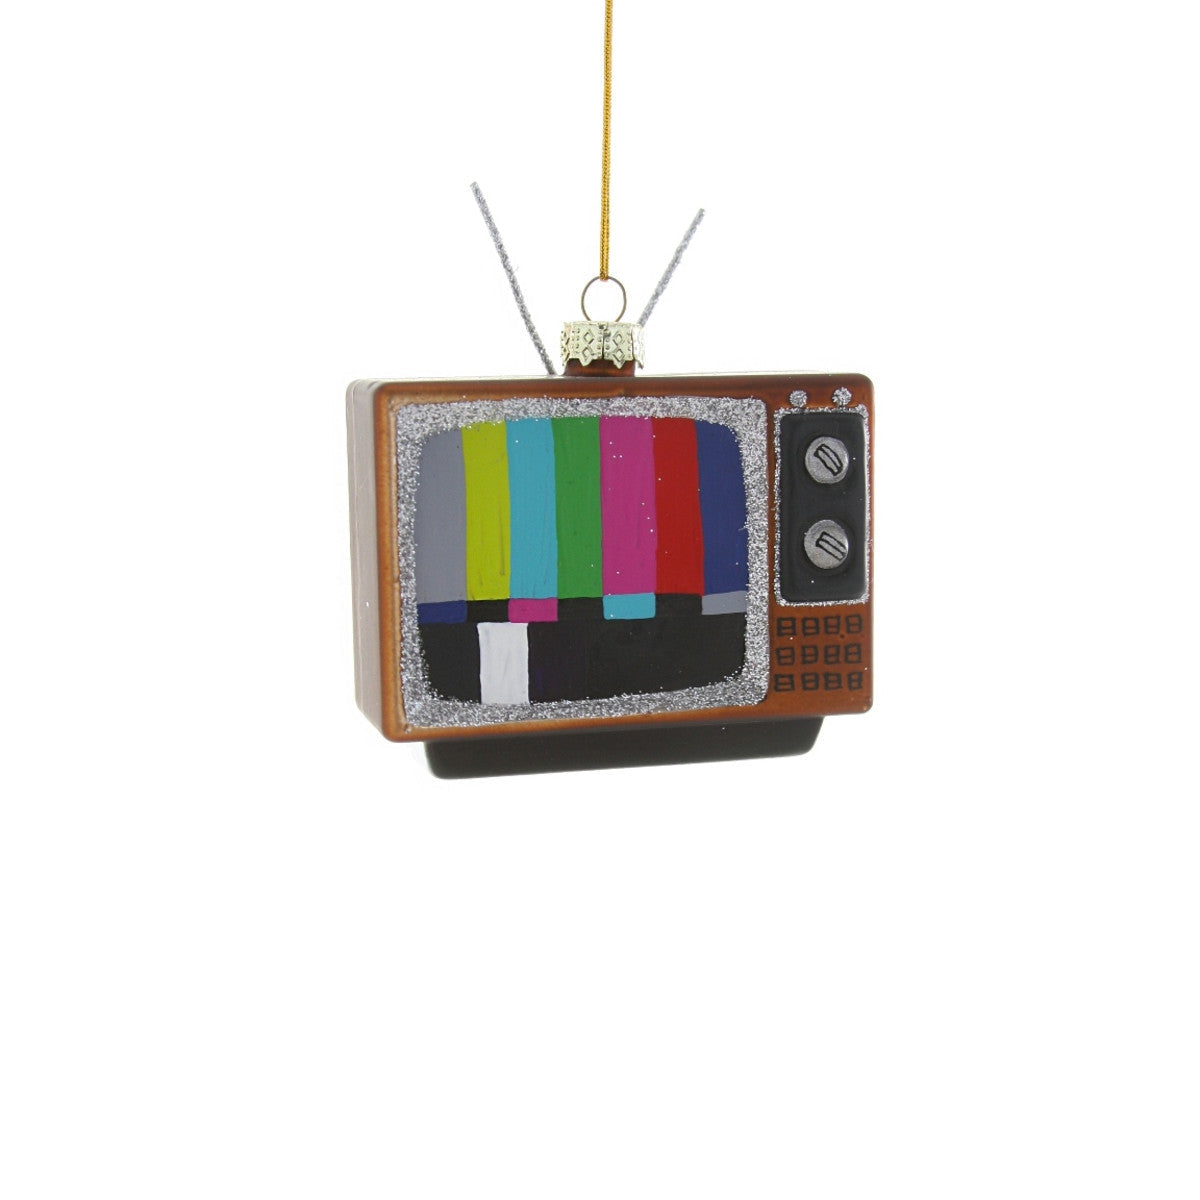 Retro Television Ornament